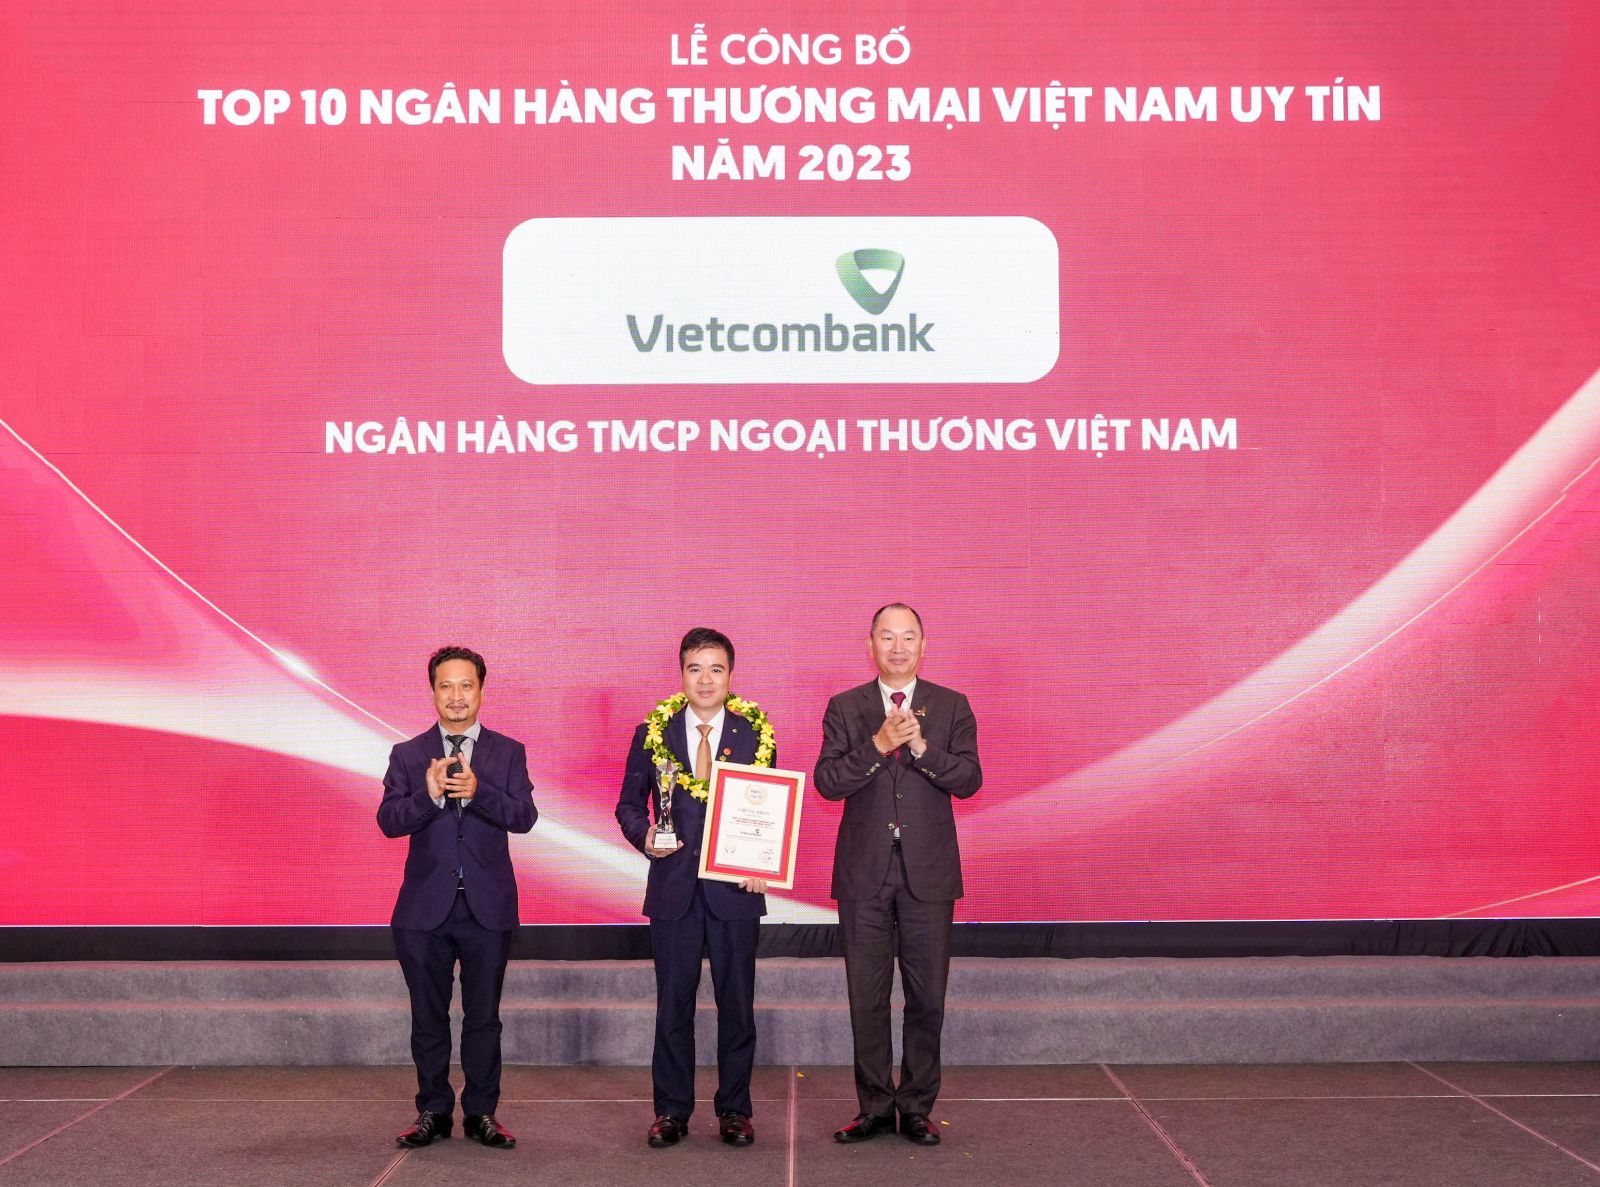 Đại diện Vietcombank (đứng giữa) nhận danh hiệu “Ngân hàng uy tín nhất Việt Nam năm 2023”